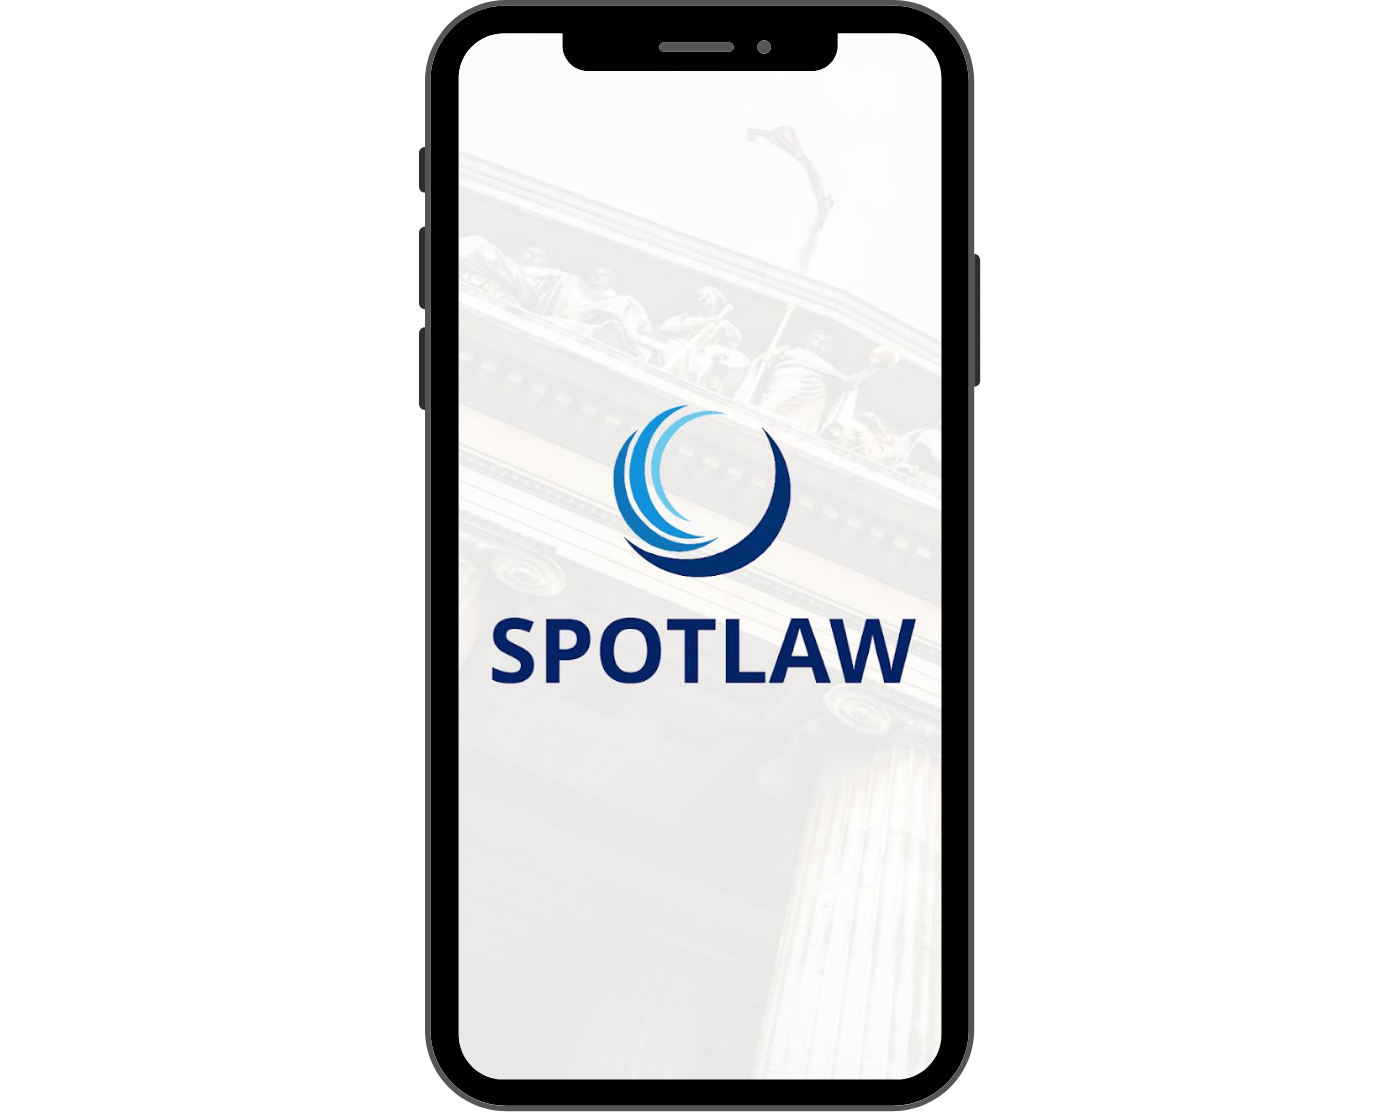 Spotlaw app 1